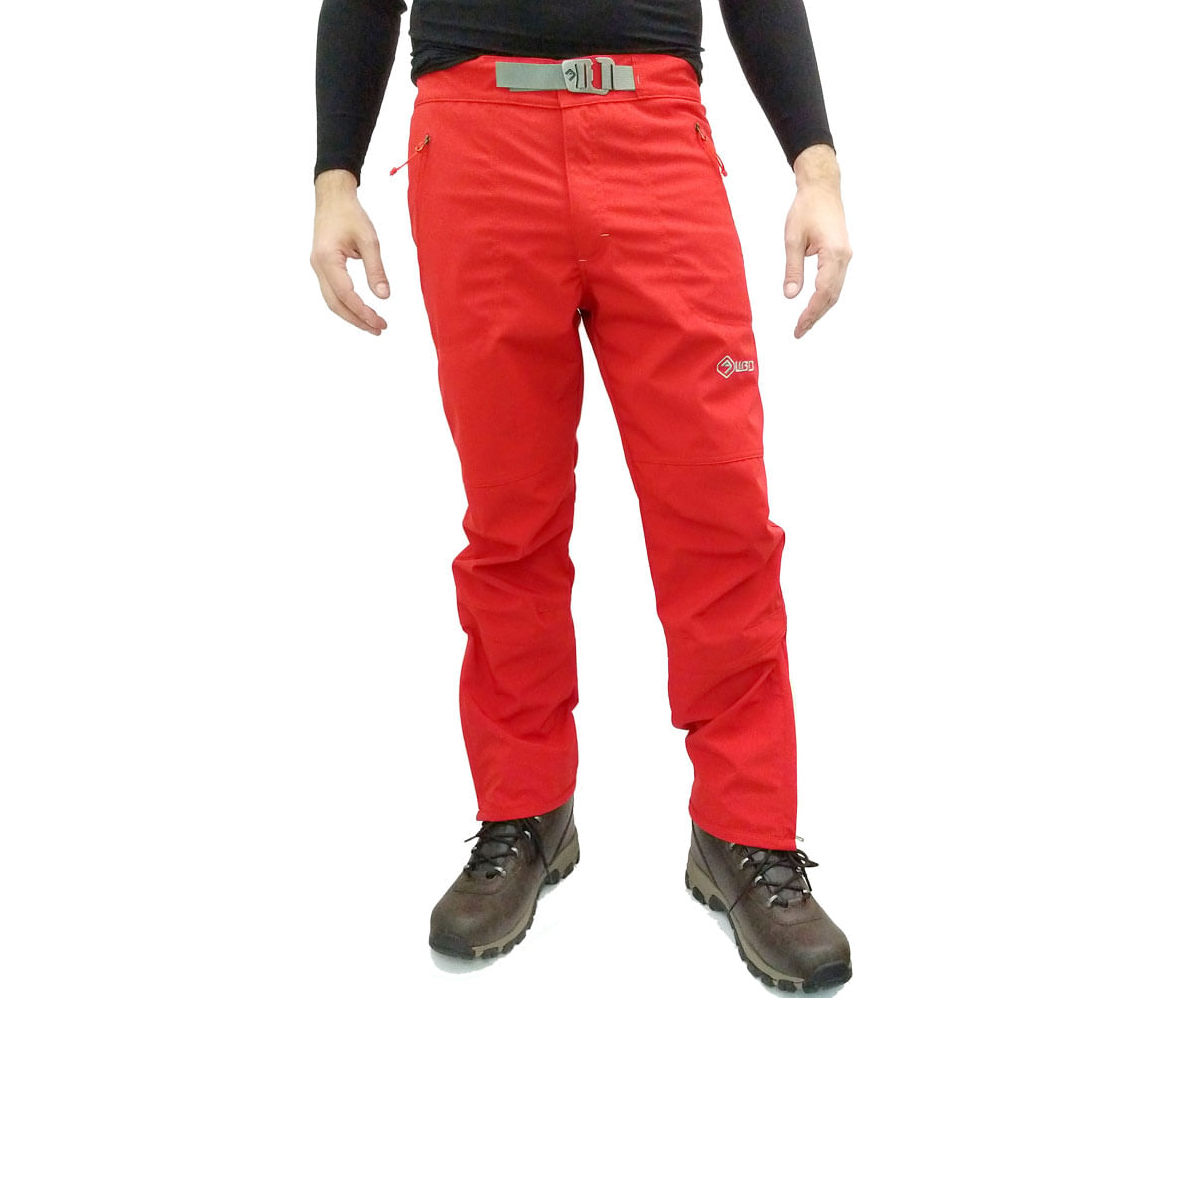 Pantalón impermeable Jakuta negro unisex, Red ledge